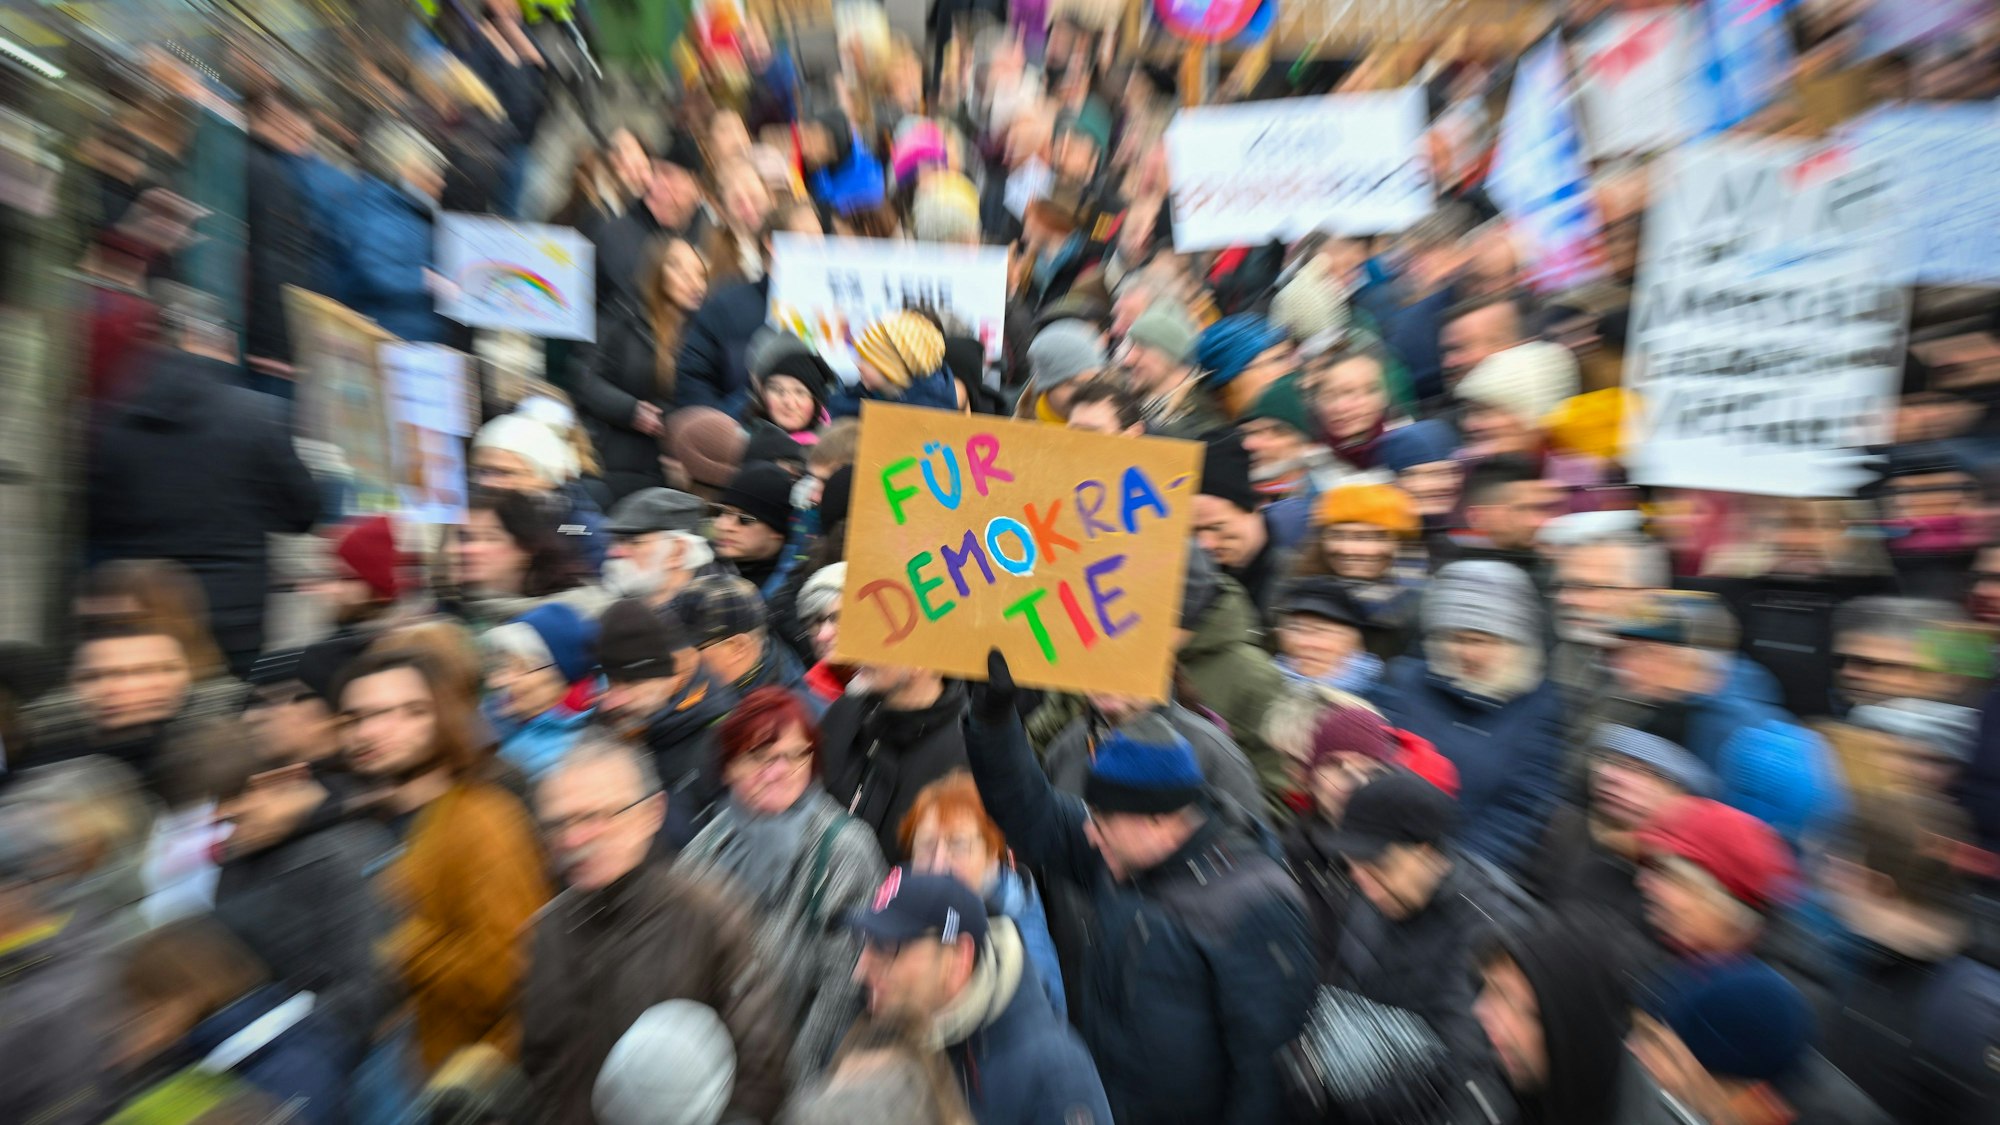 Das Bild zeigt Teilnehmer einer Demonstration, die Plakate hochhalten. Während alle Personen und Schilder verzerrt dargestellt sind, ist nur ein Plakat in der Mitte des Fotos scharf abgebildet. Auf ihm ist zu lesen „Für Demokratie“.